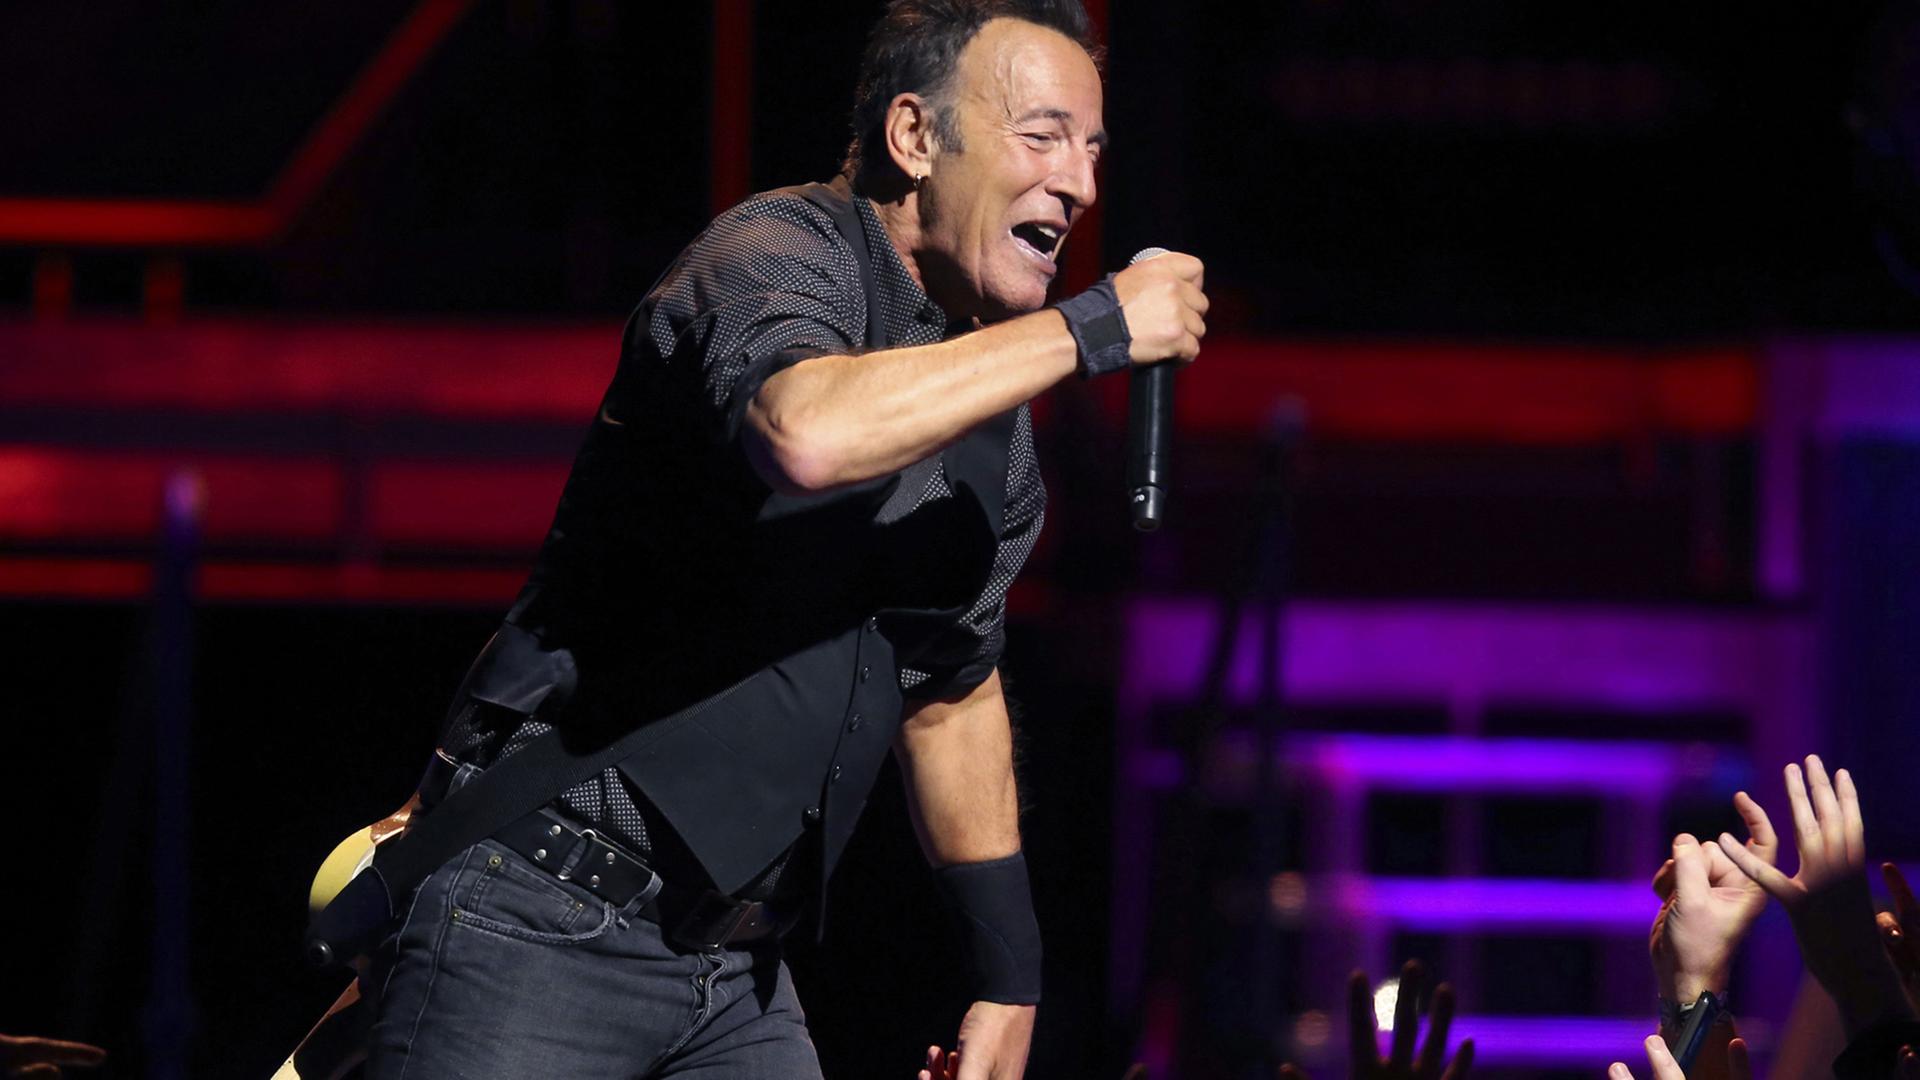 Bruce Springsteen singt bei einem Auftritt 2016 in Chicago auf der Bühne in ein Mikrofon. Hände recken sich ihm entgegen.